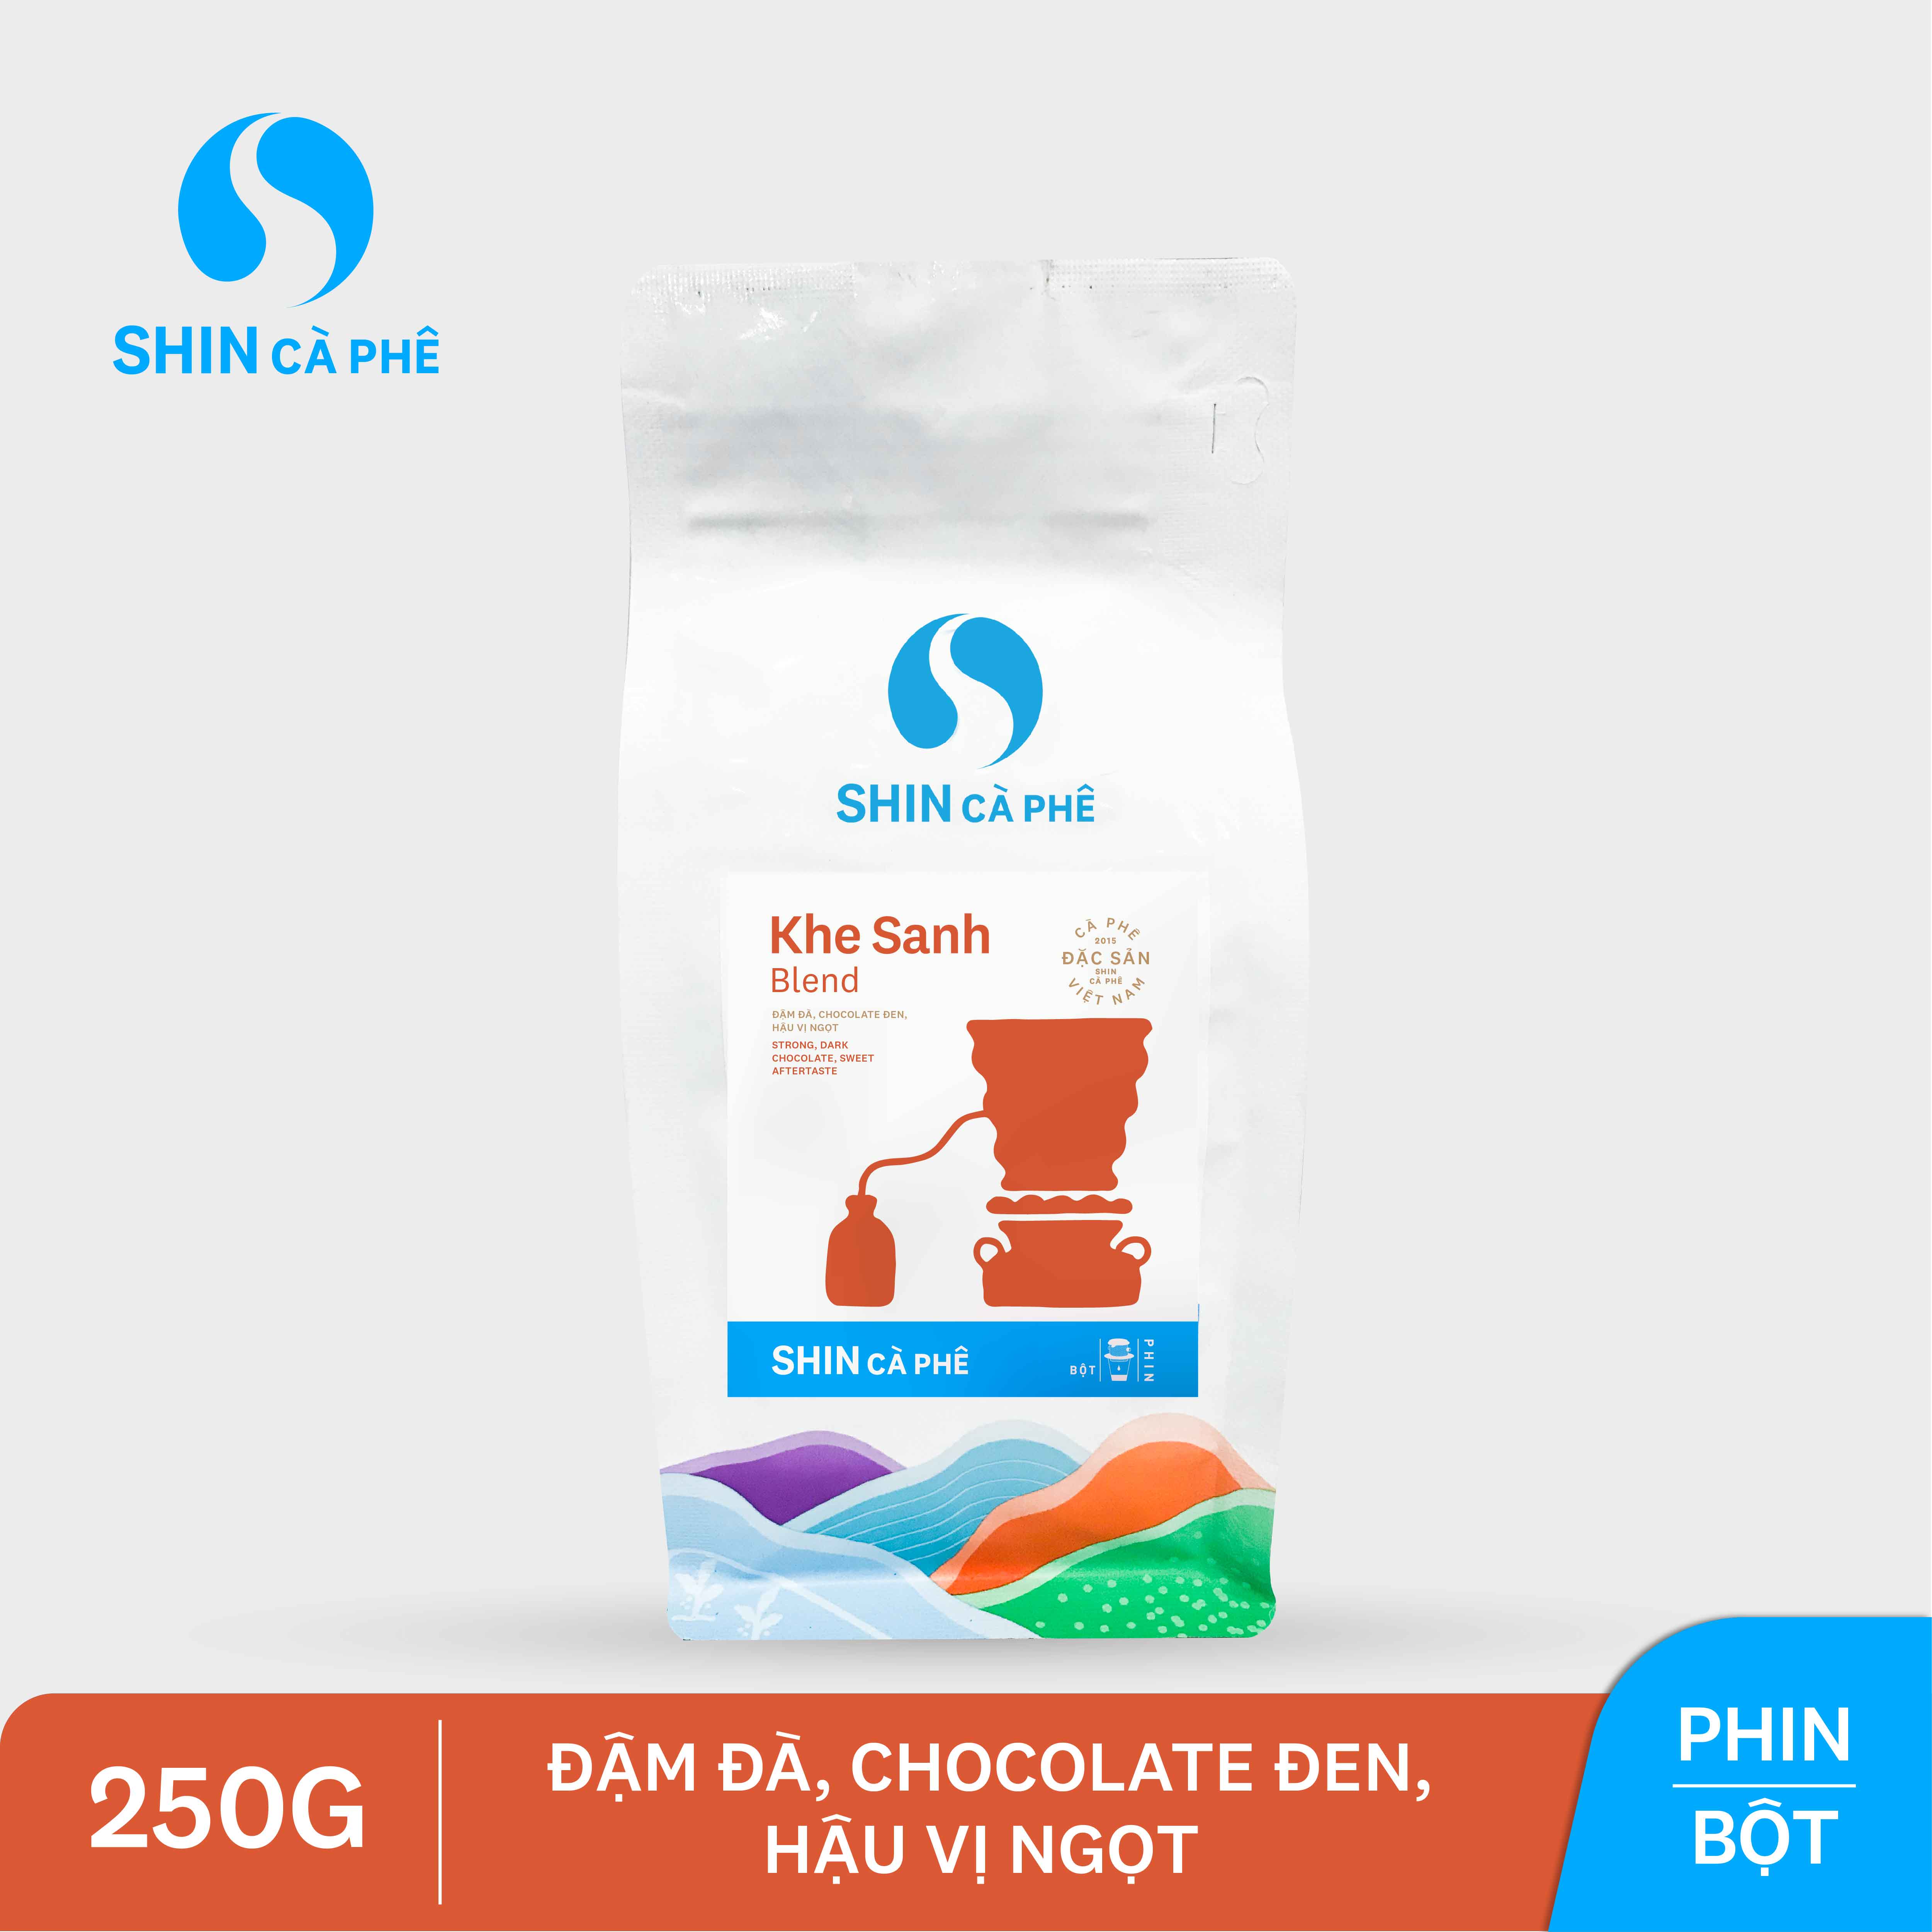 SHIN Cà Phê - Khe Sanh Blend 250g bột - Cà phê đặc sản pha phin